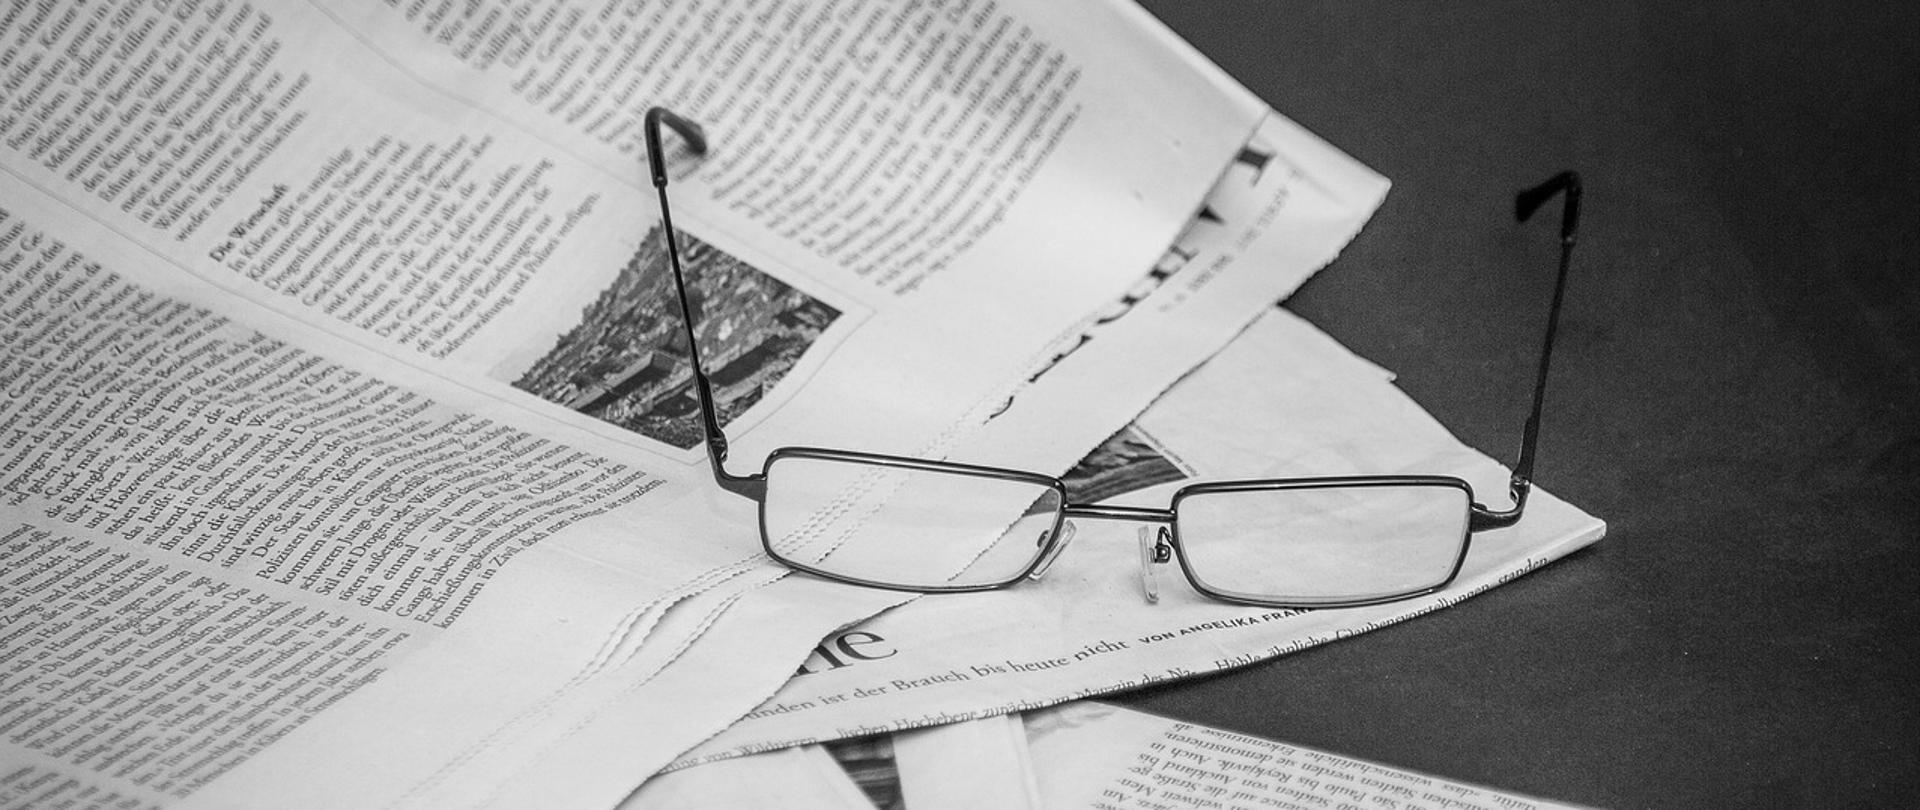 Czarno-białe zdjęcie okularów leżących na stosie gazet